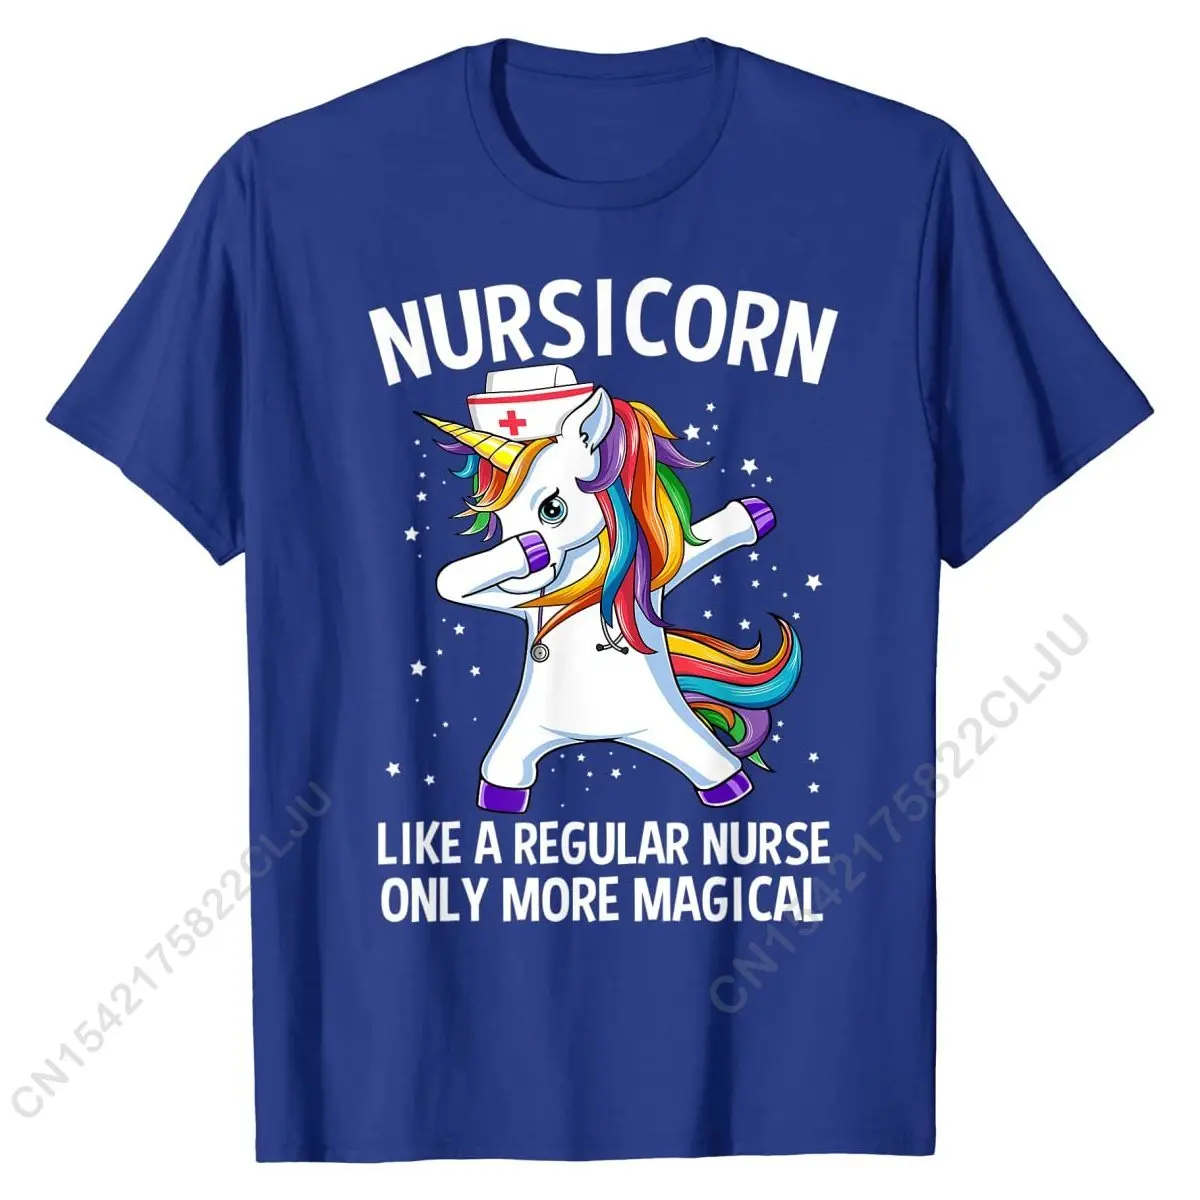 Вытирающий Единорог Nursicorn, Забавная футболка медсестры, футболки, Повседневные хлопковые мужские футболки, дизайн - 1